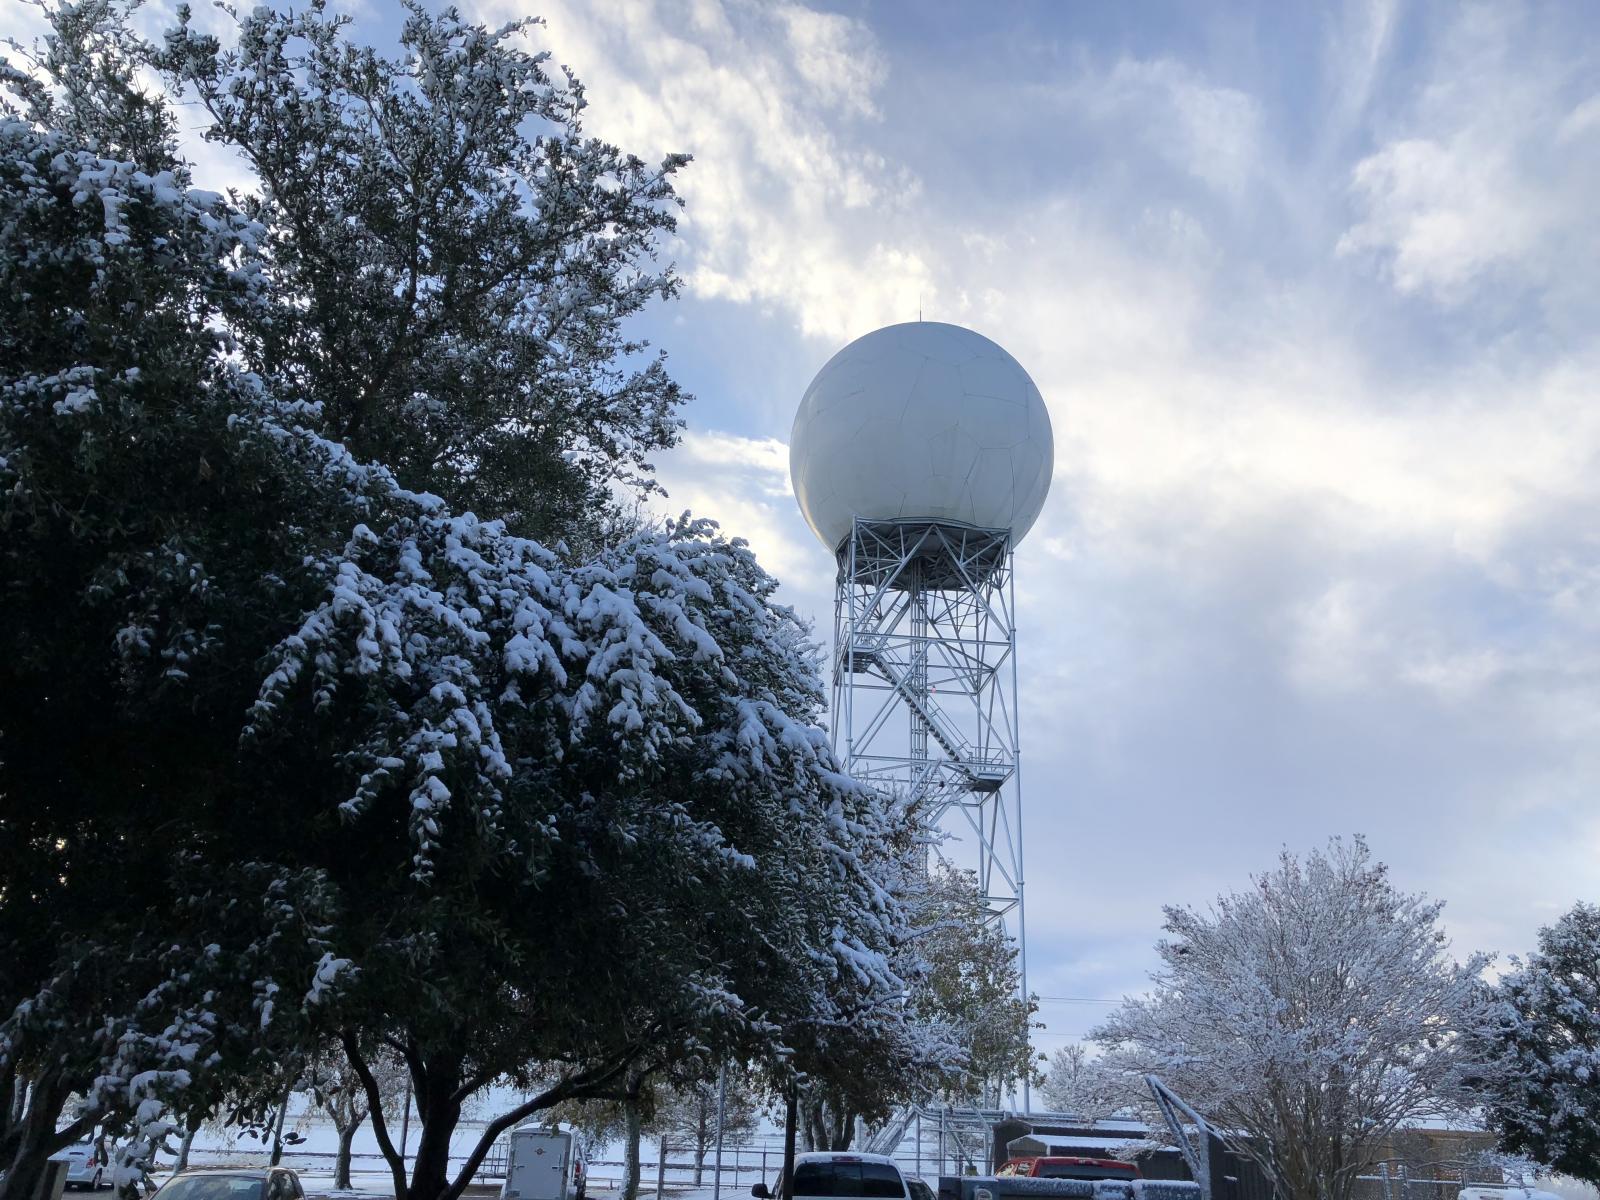 NWS Austin/San Antonio Radar From Ground